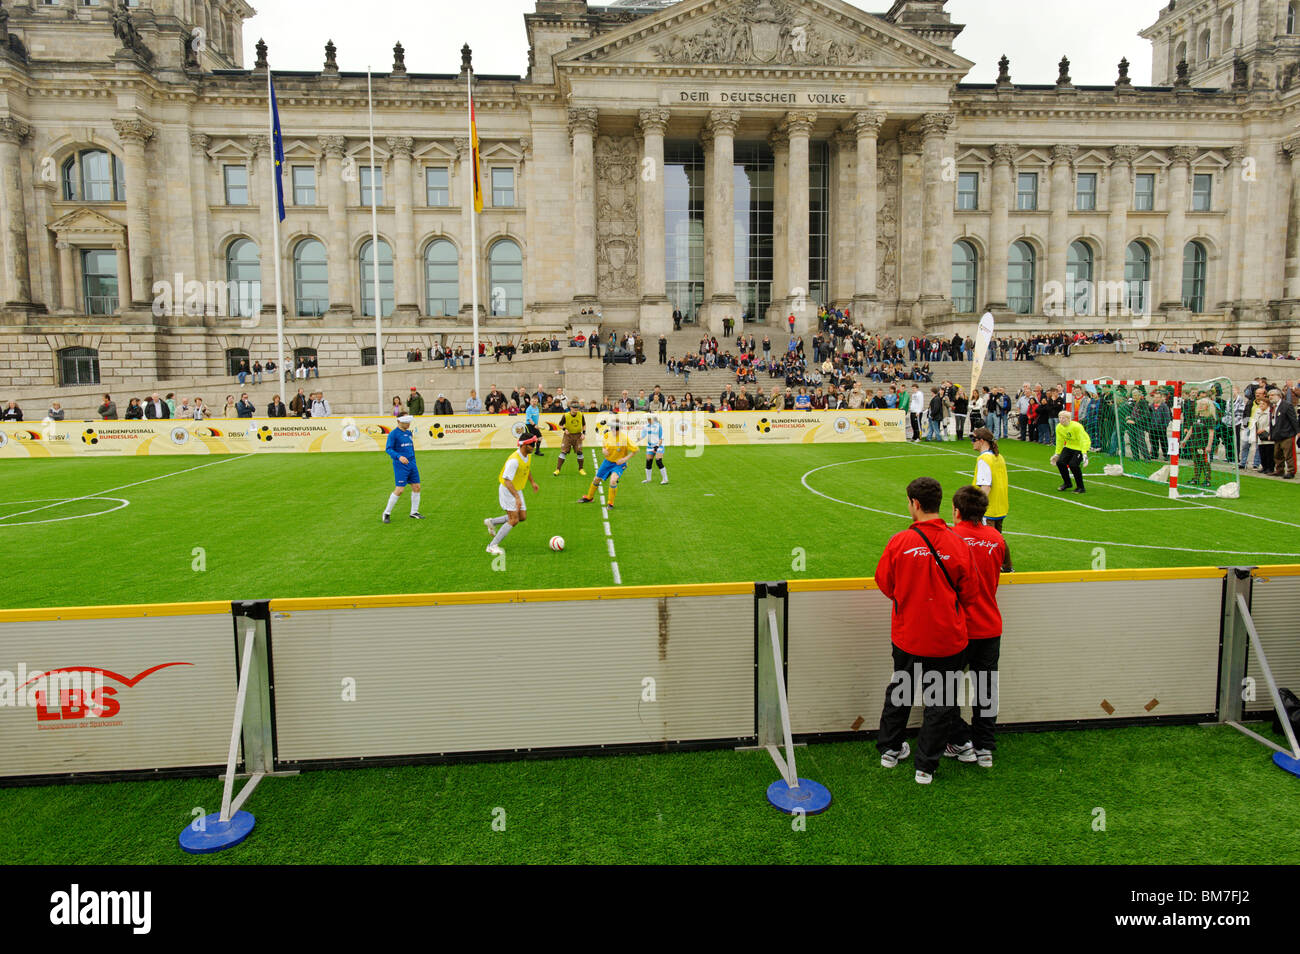 Primo incontro internazionale della tedesca cieco squadra calcistica al di fuori dell'Edificio del Reichstag di Berlino, Germania Foto Stock